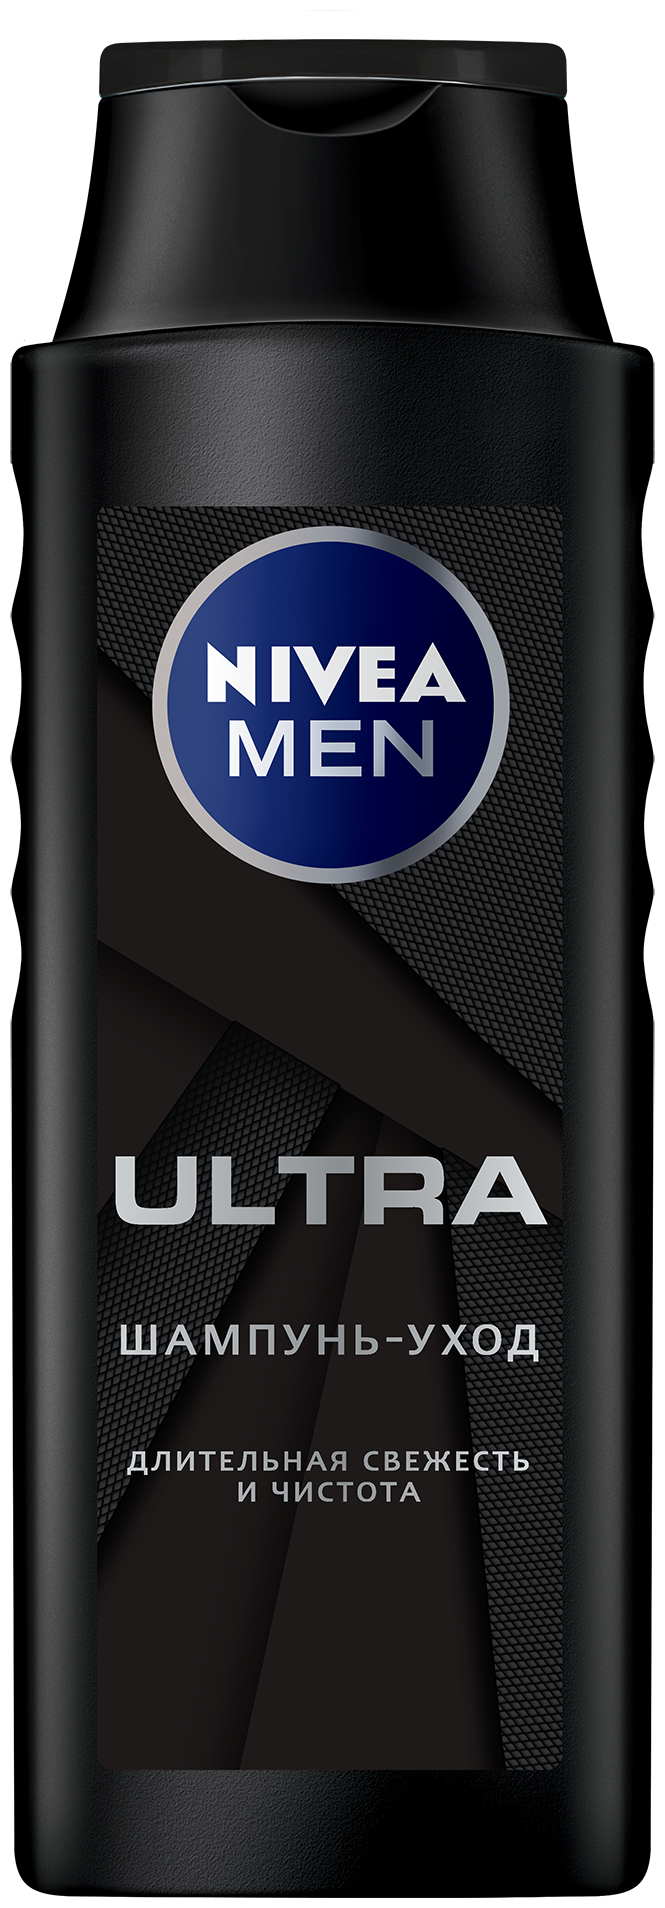 Nivea шампунь-уход Men Ultra Длительная свежесть и чистота